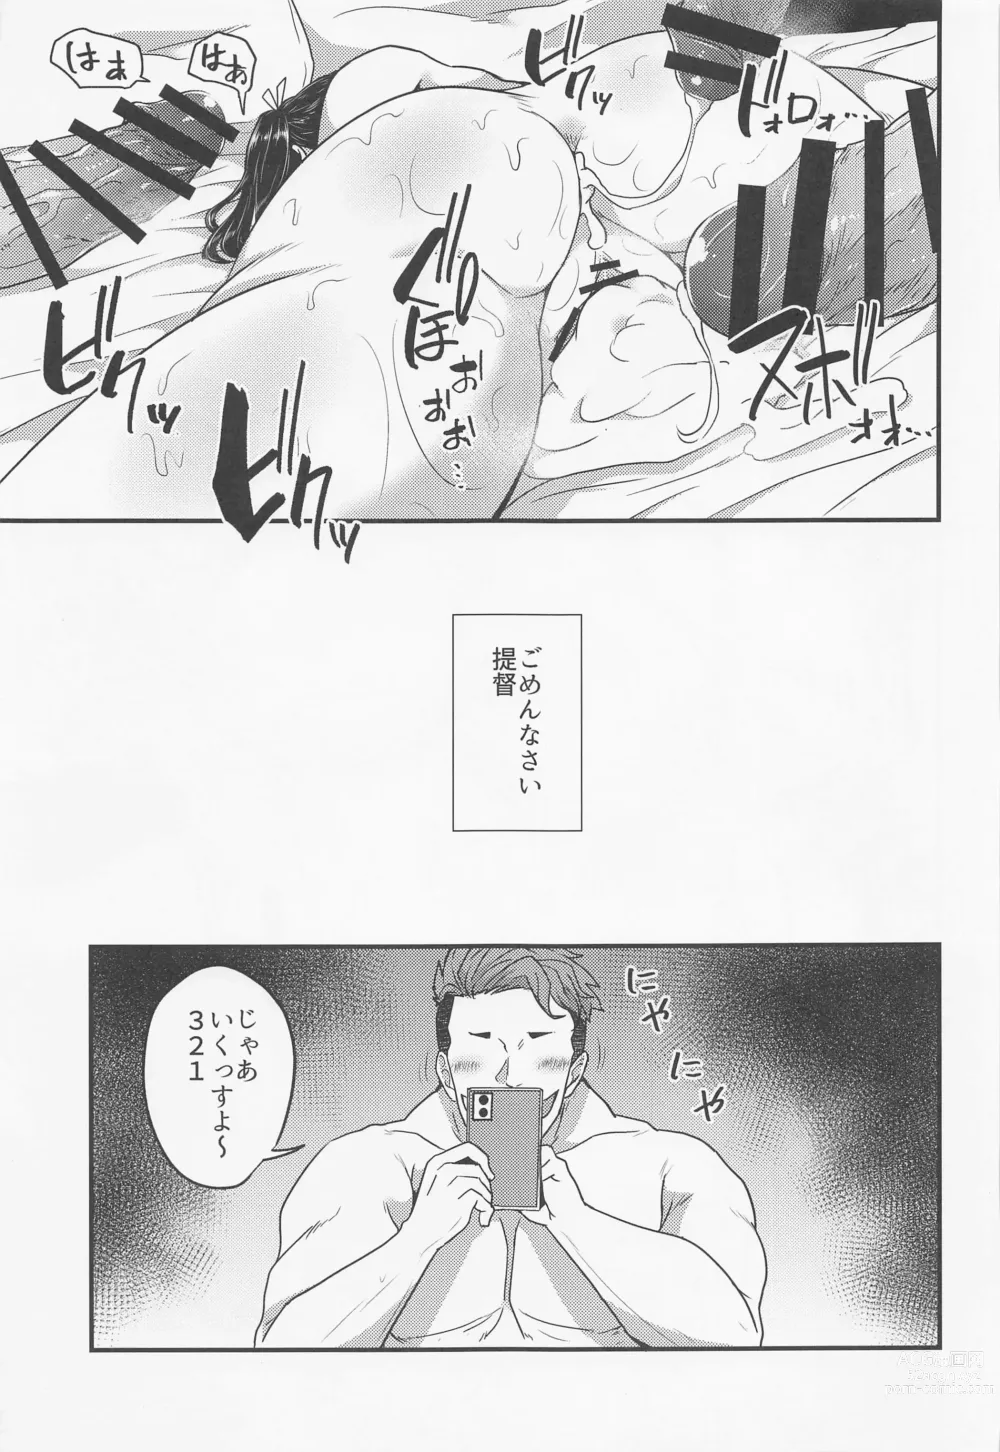 Page 22 of doujinshi Soshiki ni wa Katenakatta yo